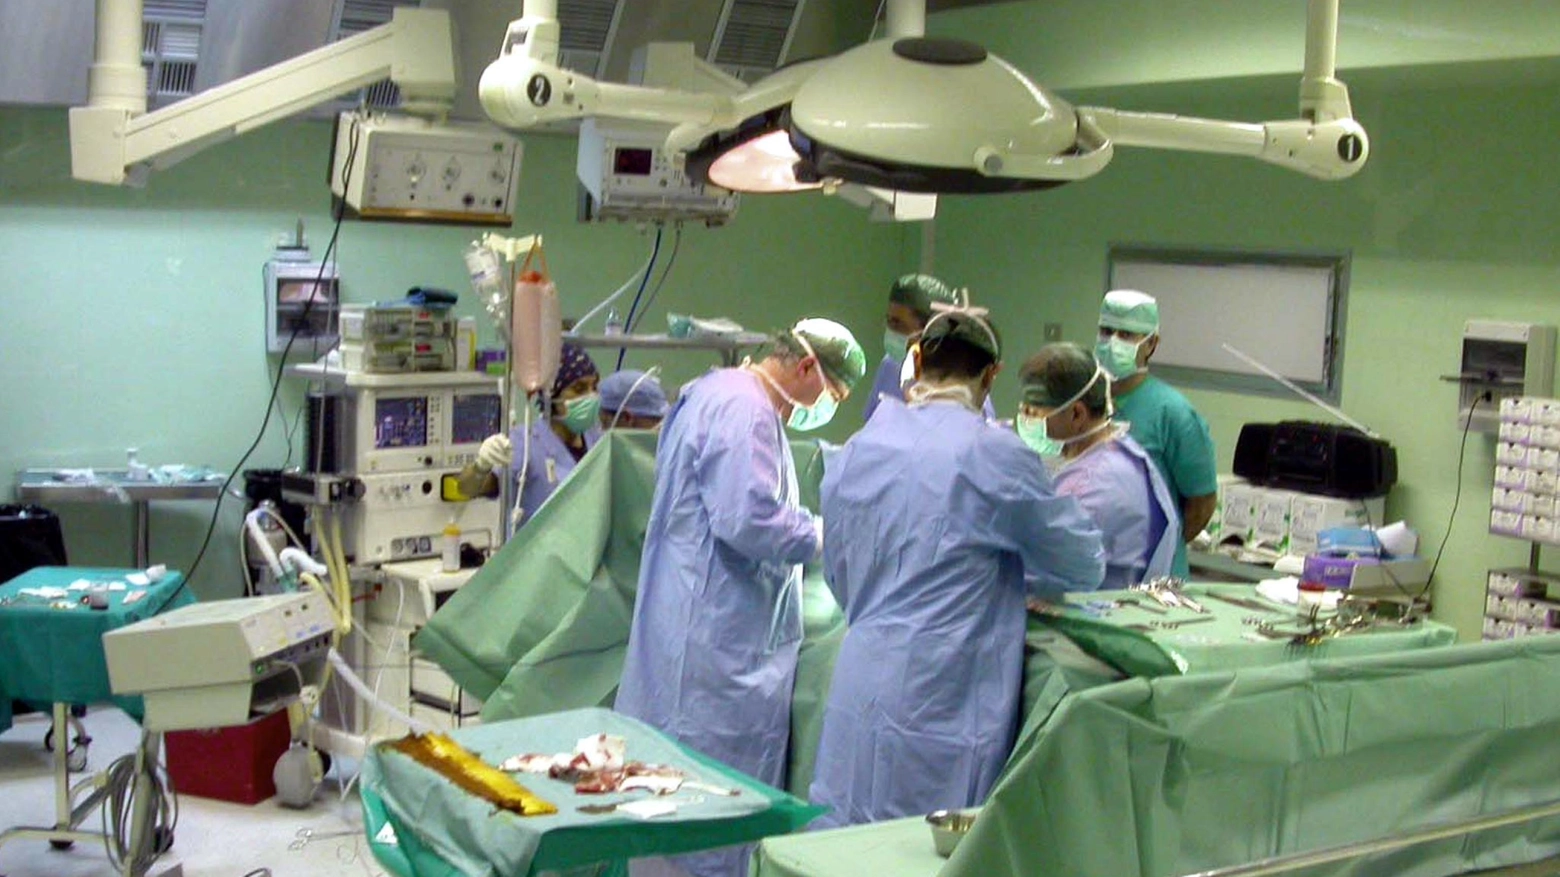 Progressi in ospedale  Impianto di un pacemaker:  test nuova tecnica superato